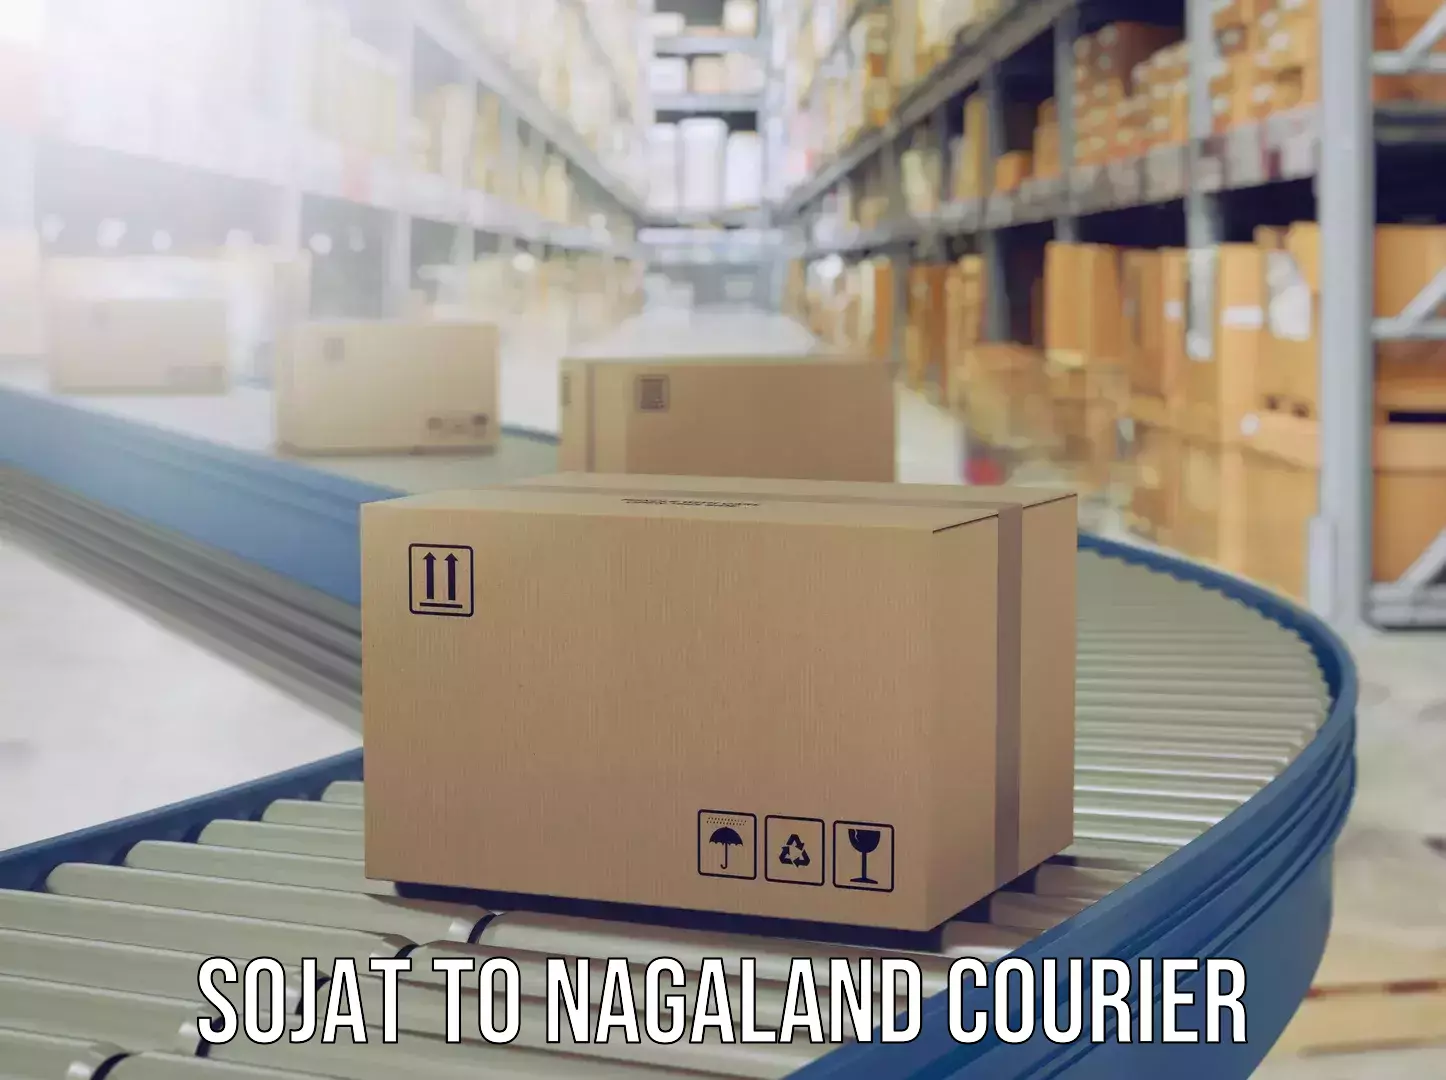 Urgent luggage shipment Sojat to Nagaland